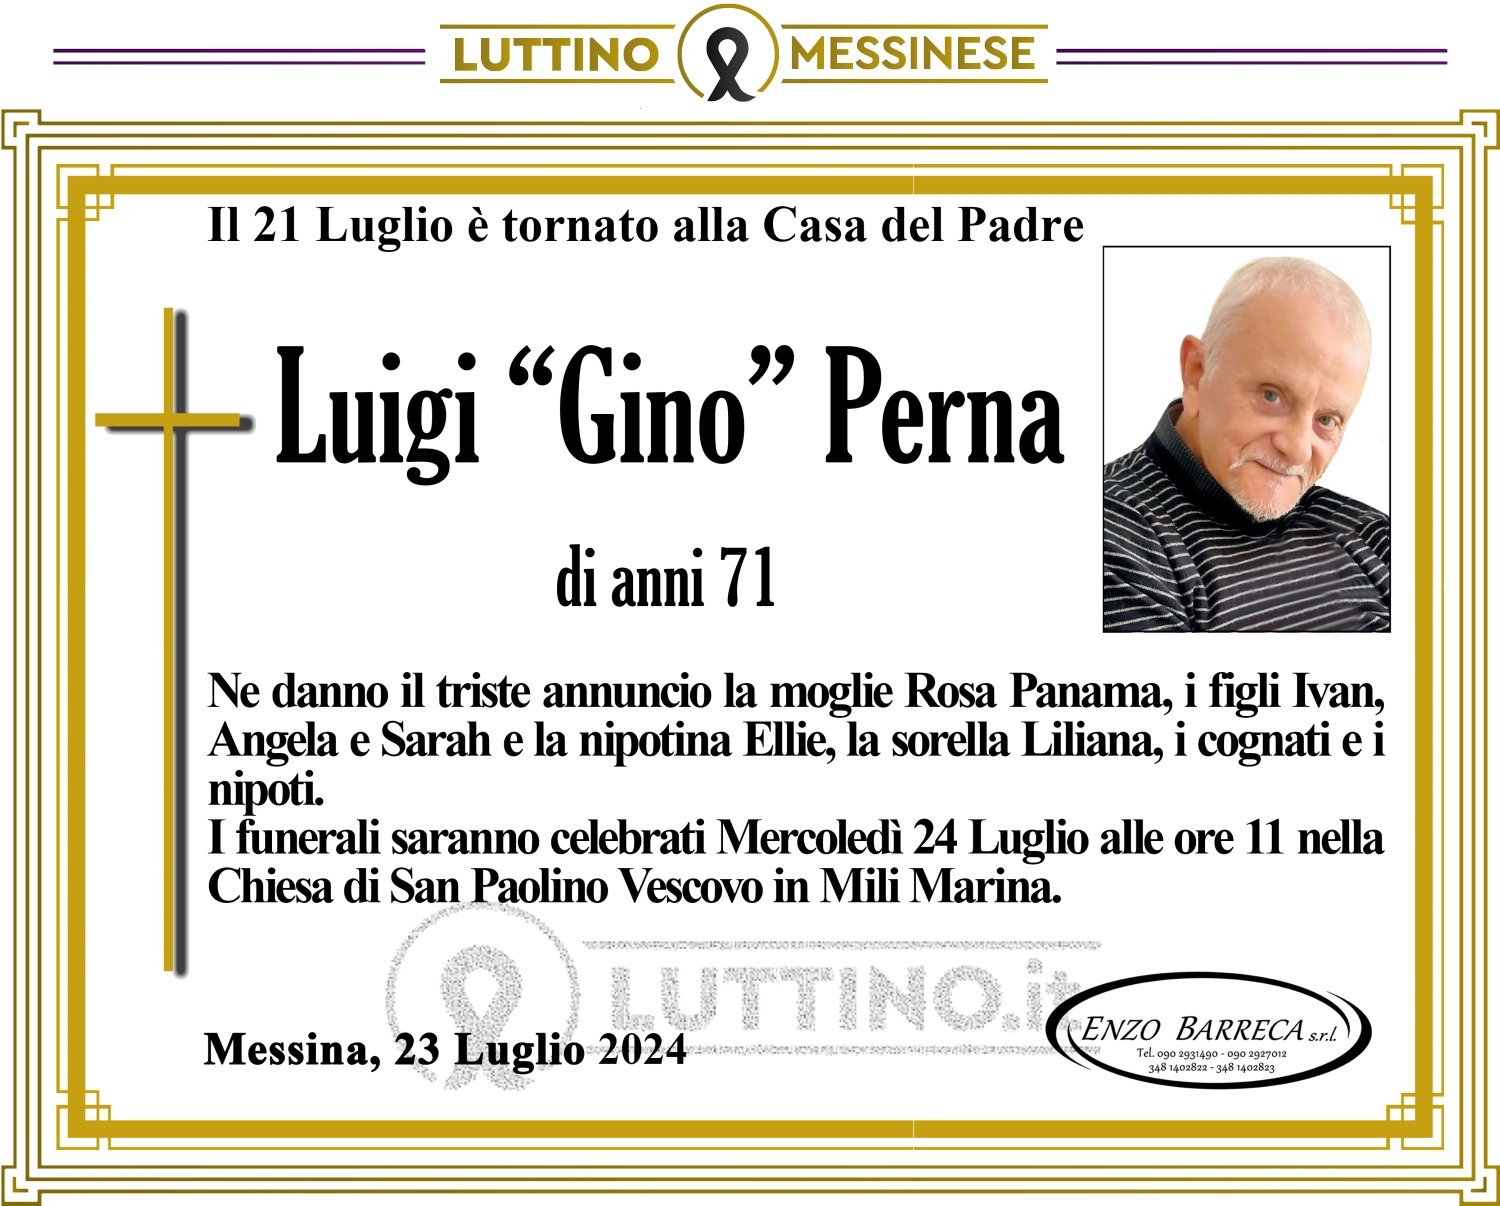 Luigi Gino Perna 